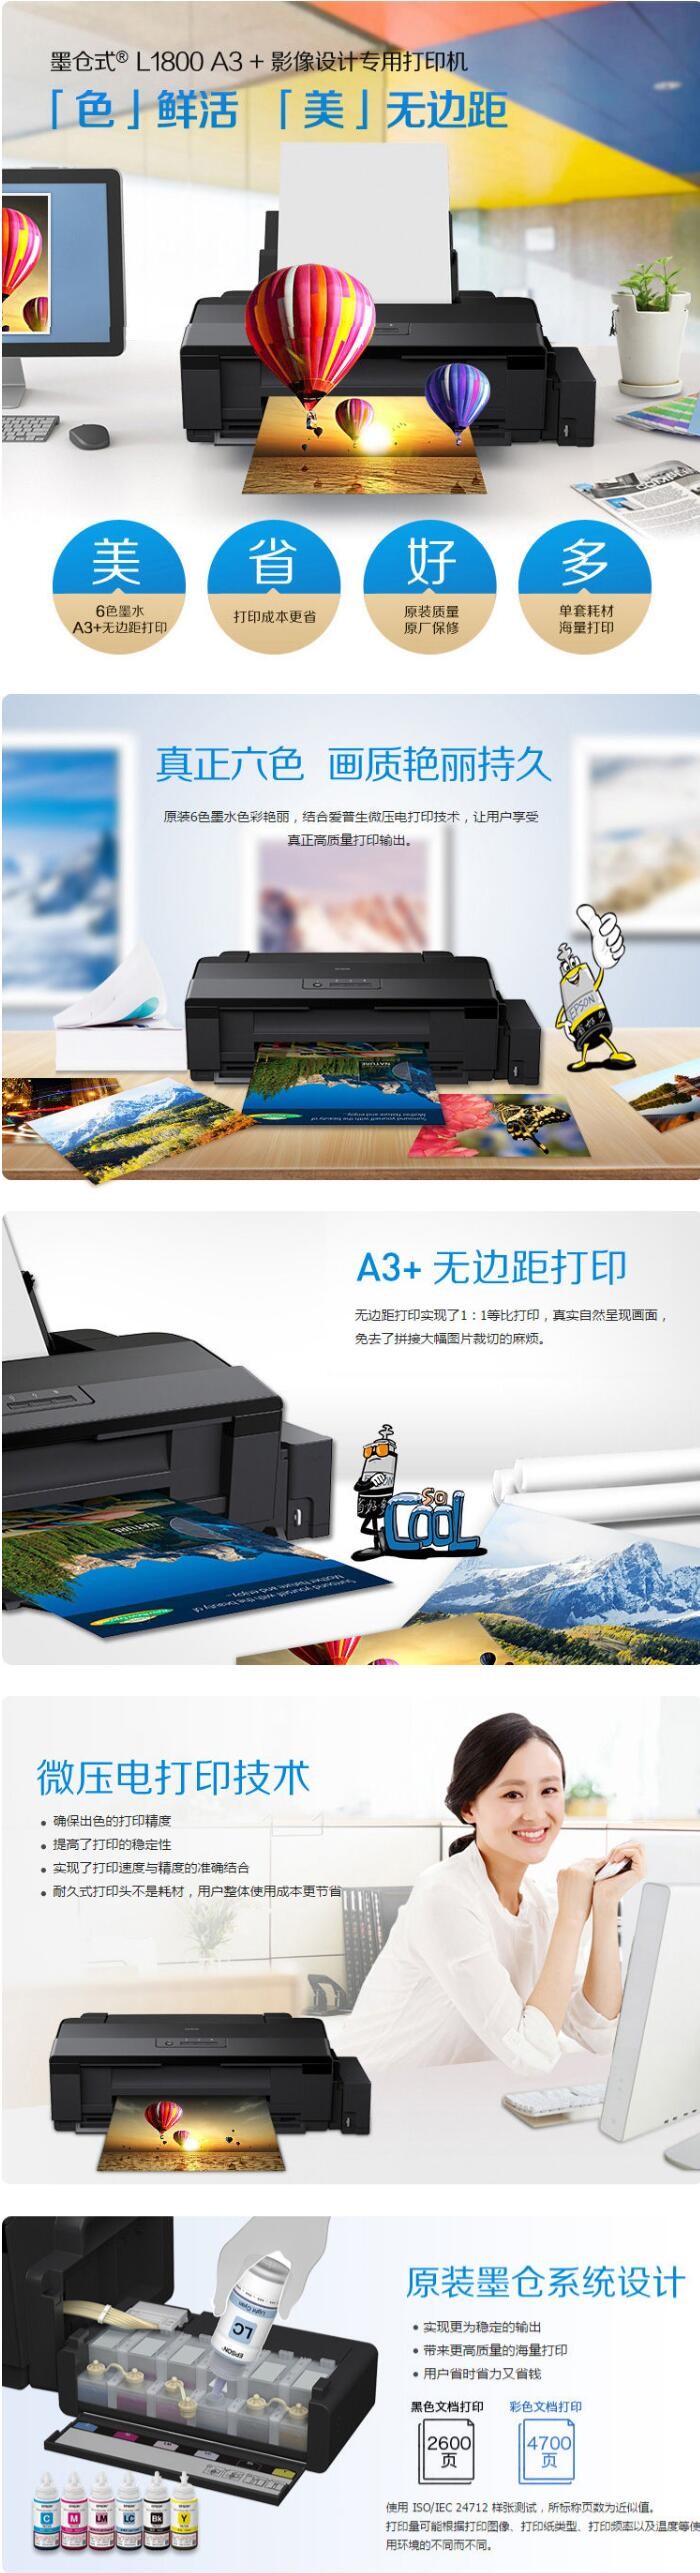 爱普生/Epson L1800 A3+幅面 彩色喷墨打印机(图5)